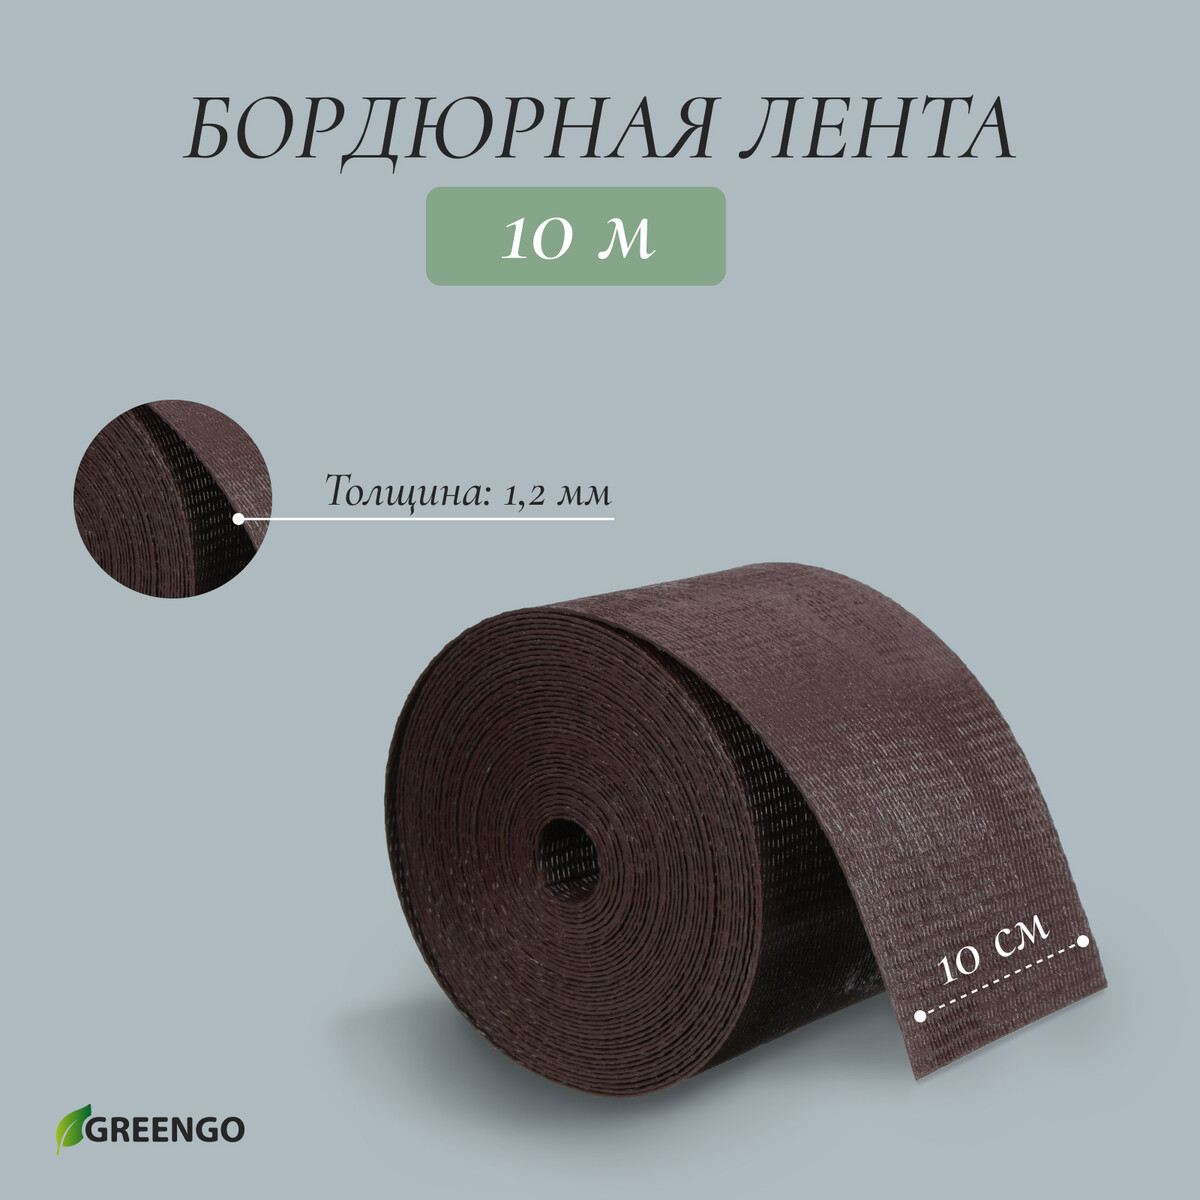 Лента бордюрная, 0.1 × 10 м, толщина 1.2 мм, пластиковая, коричневая, greengo лента бордюрная 0 2 × 9 м толщина 0 6 мм пластиковая гофра розовая